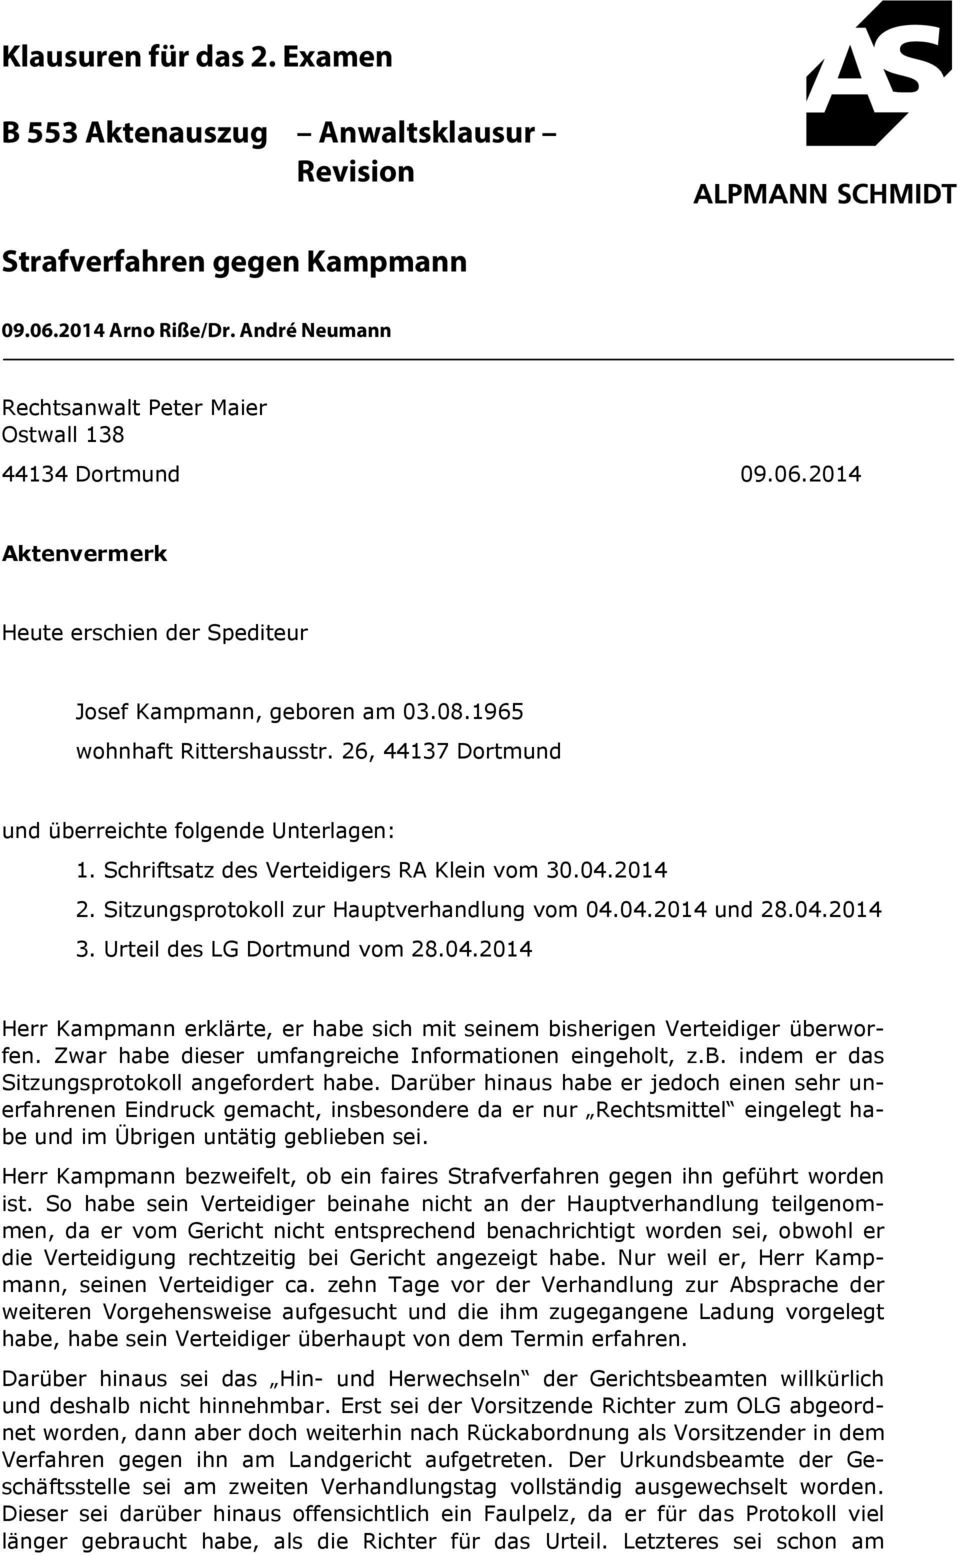 04.2014 3. Urteil des LG Dortmund vom 28.04.2014 Herr Kampmann erklärte, er habe sich mit seinem bisherigen Verteidiger überworfen. Zwar habe dieser umfangreiche Informationen eingeholt, z.b. indem er das Sitzungsprotokoll angefordert habe.